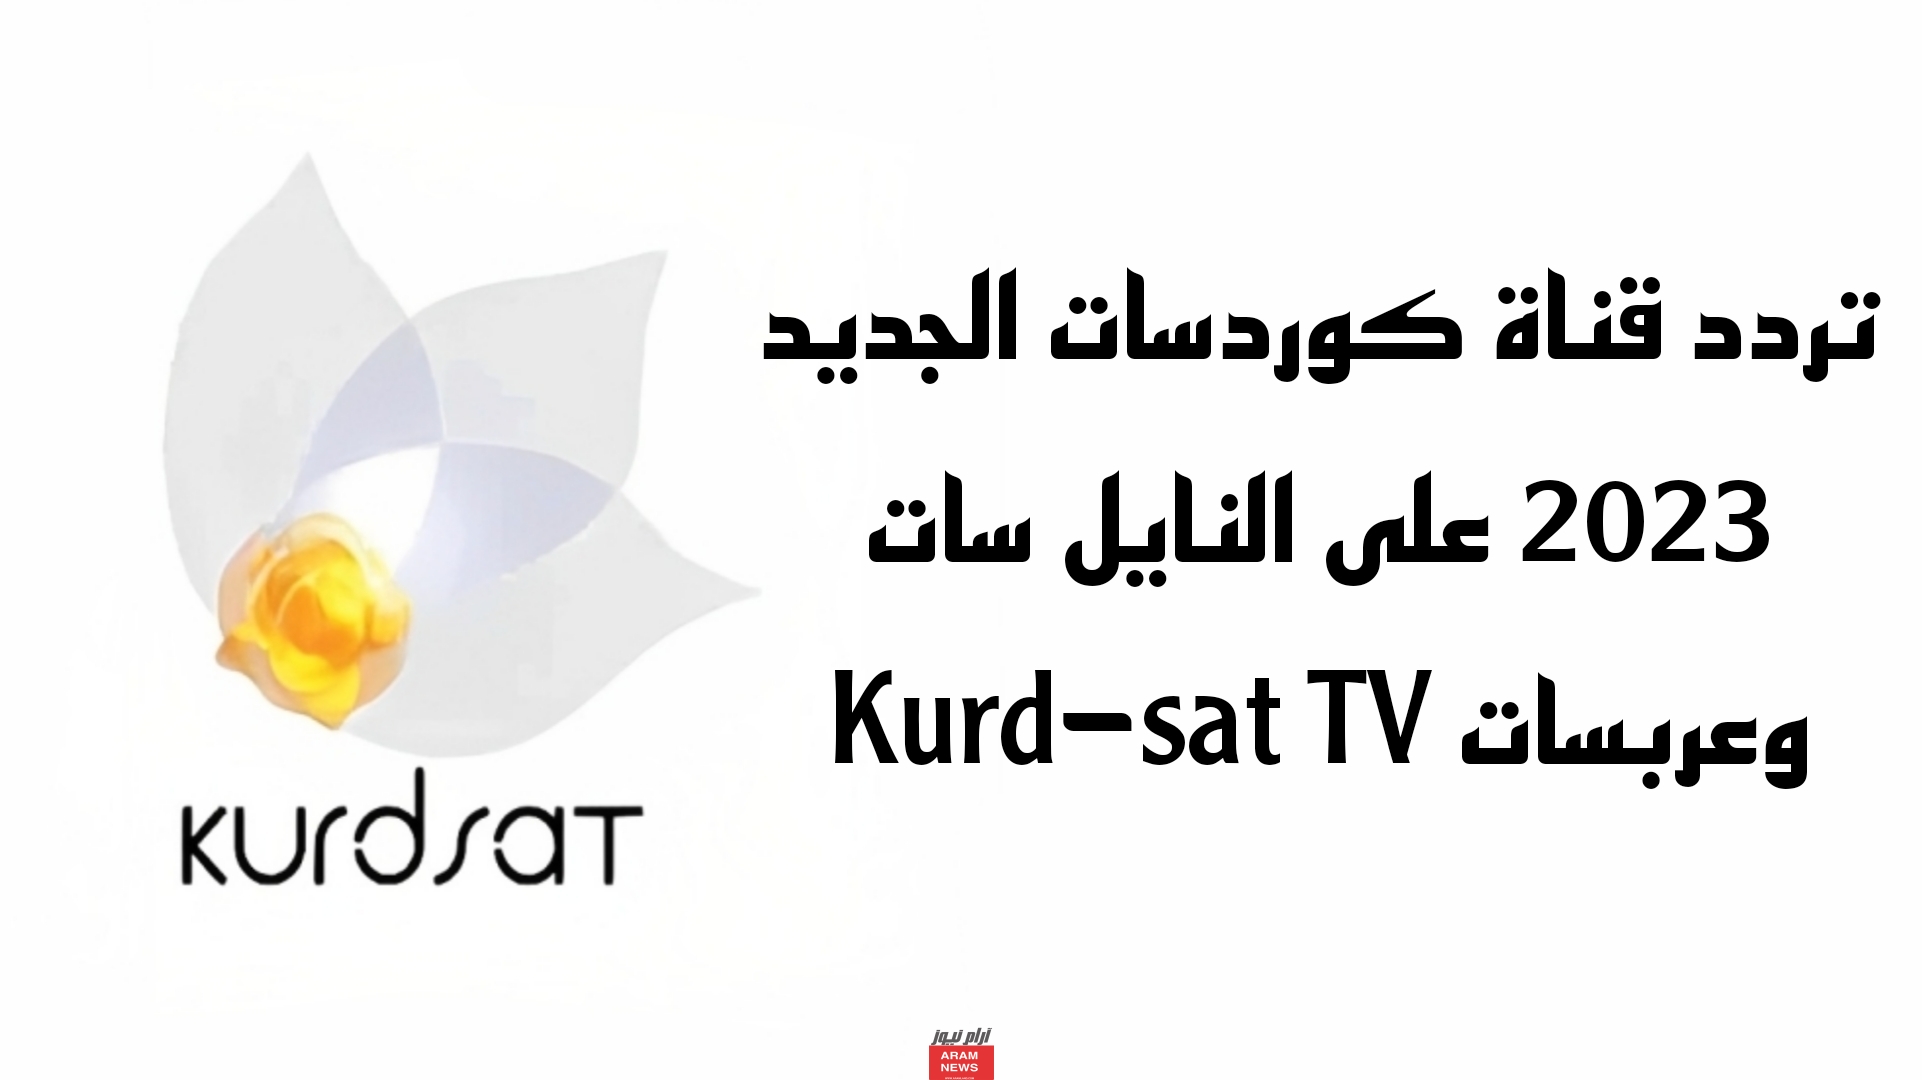 تردد قناة كوردسات الجديد على النايل سات وعربسات Kurd-sat TV